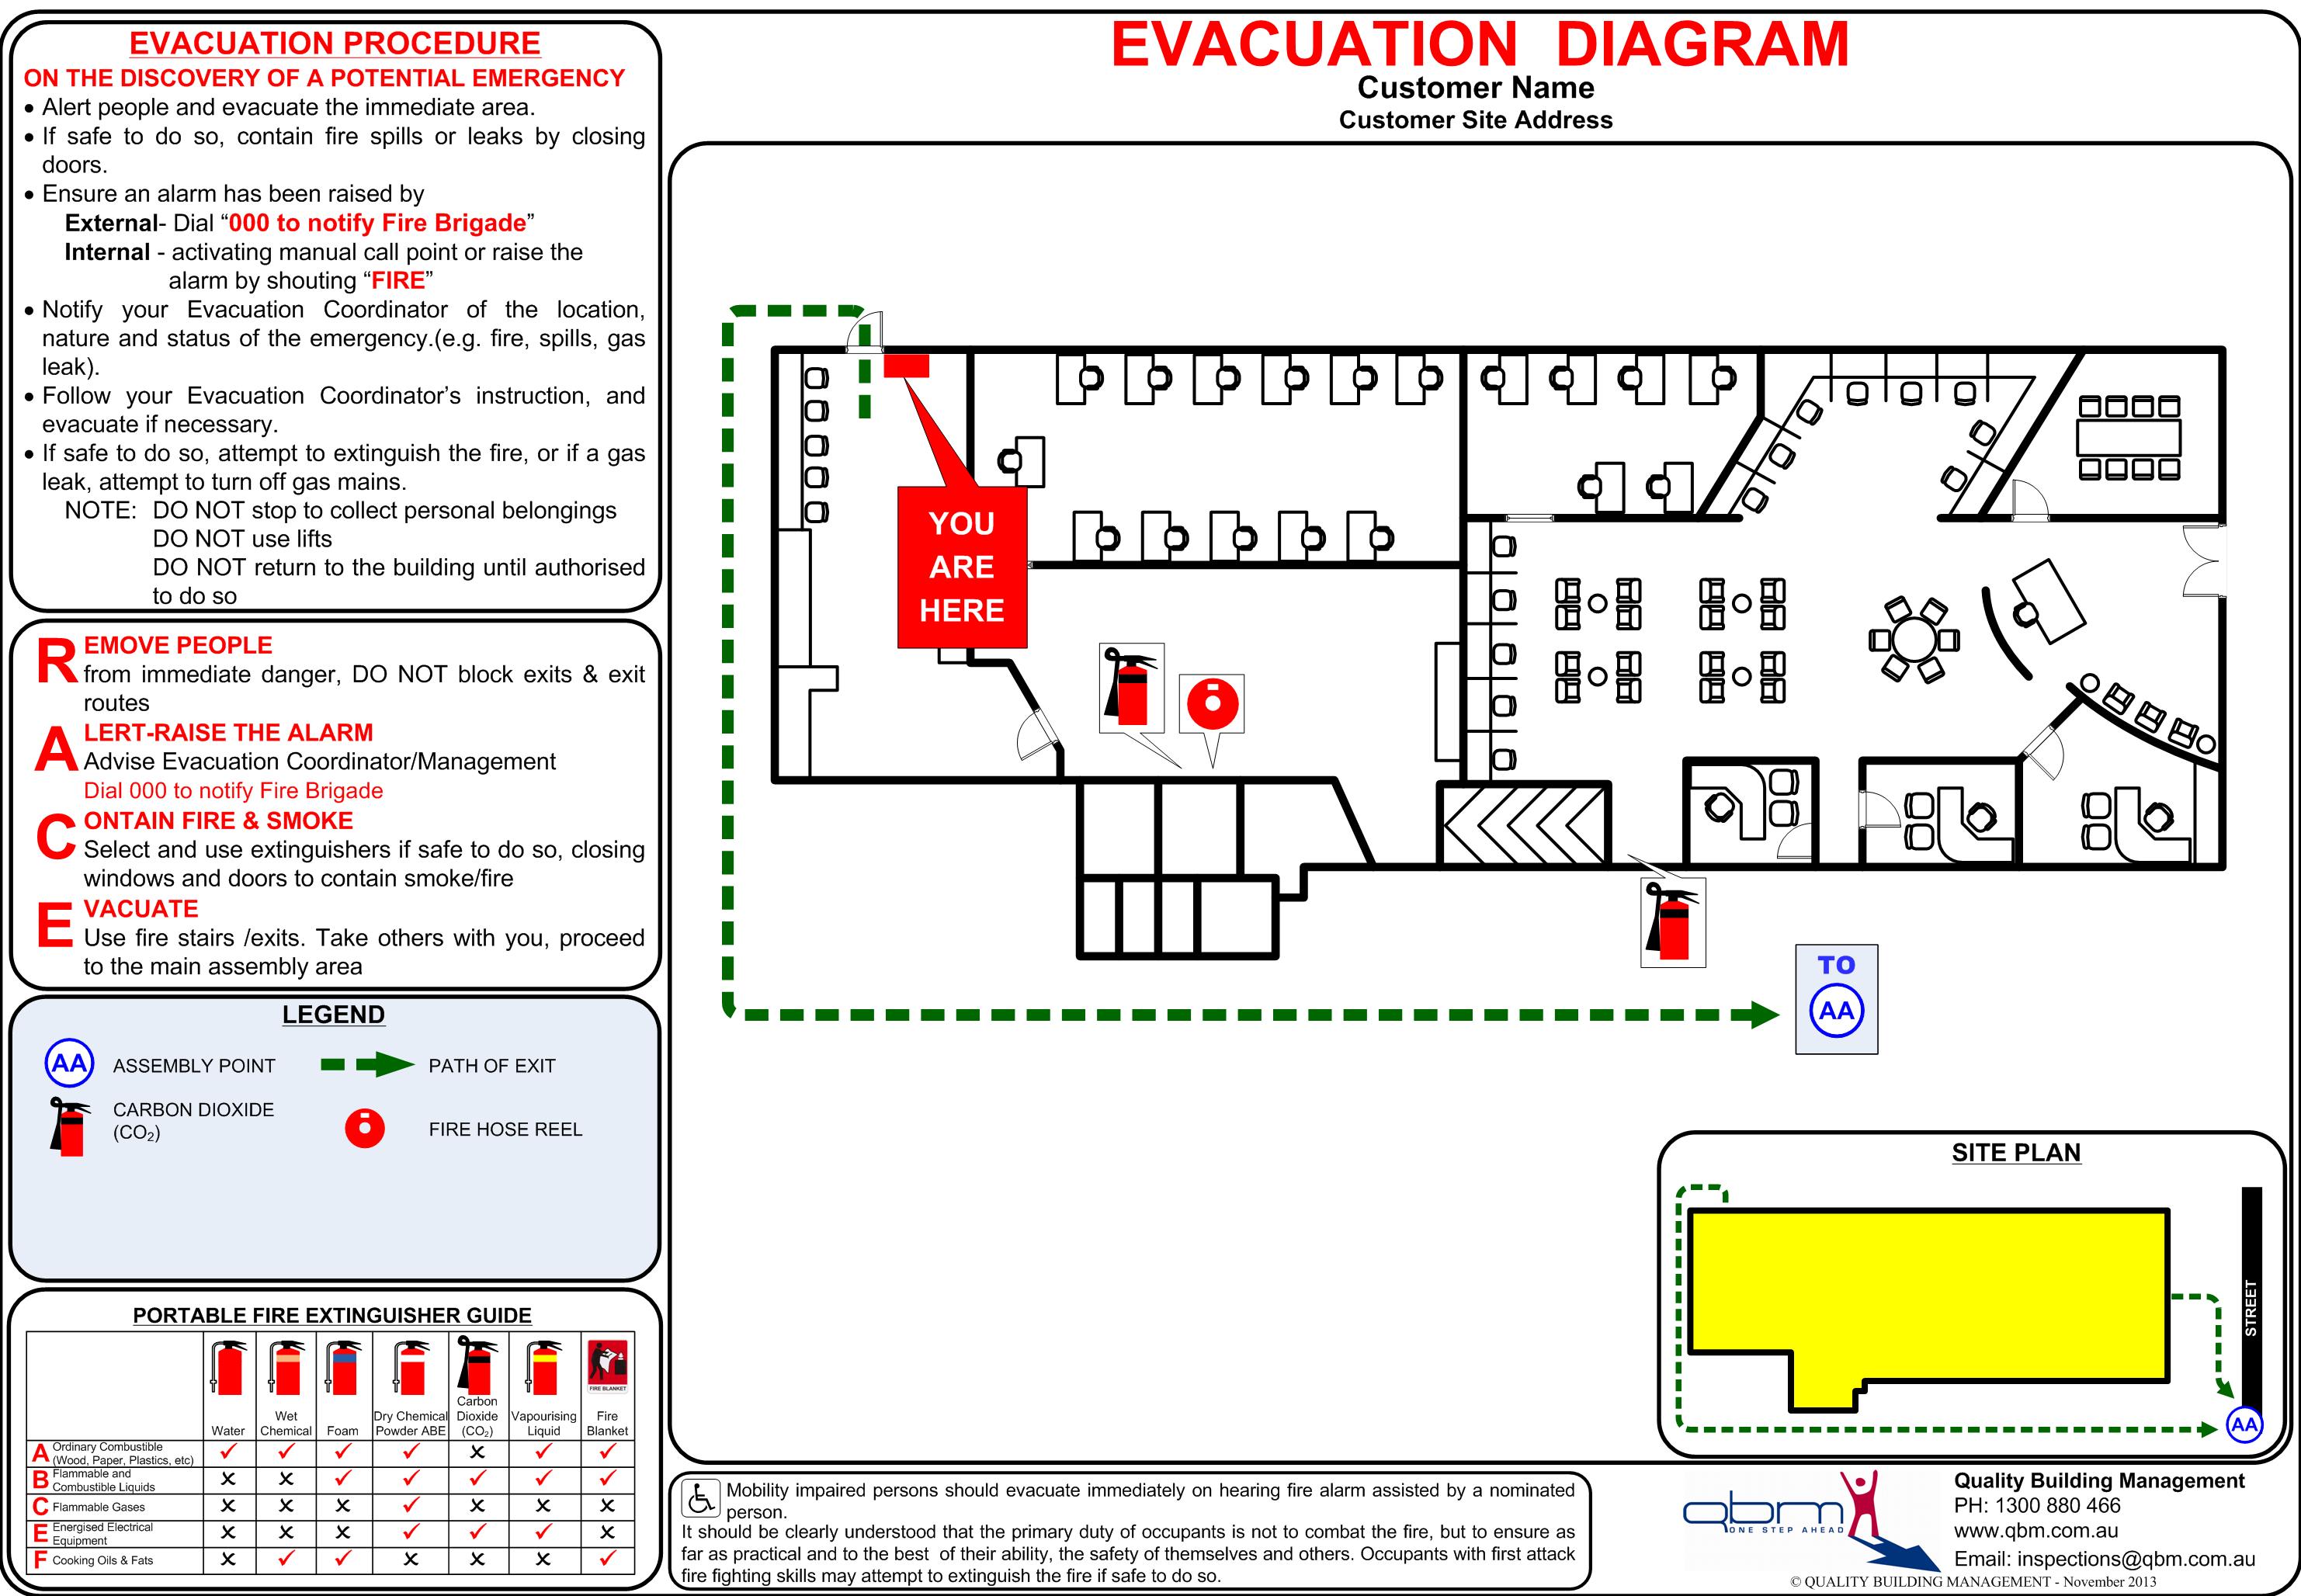 Evacuation Route Map Template from qbm.com.au